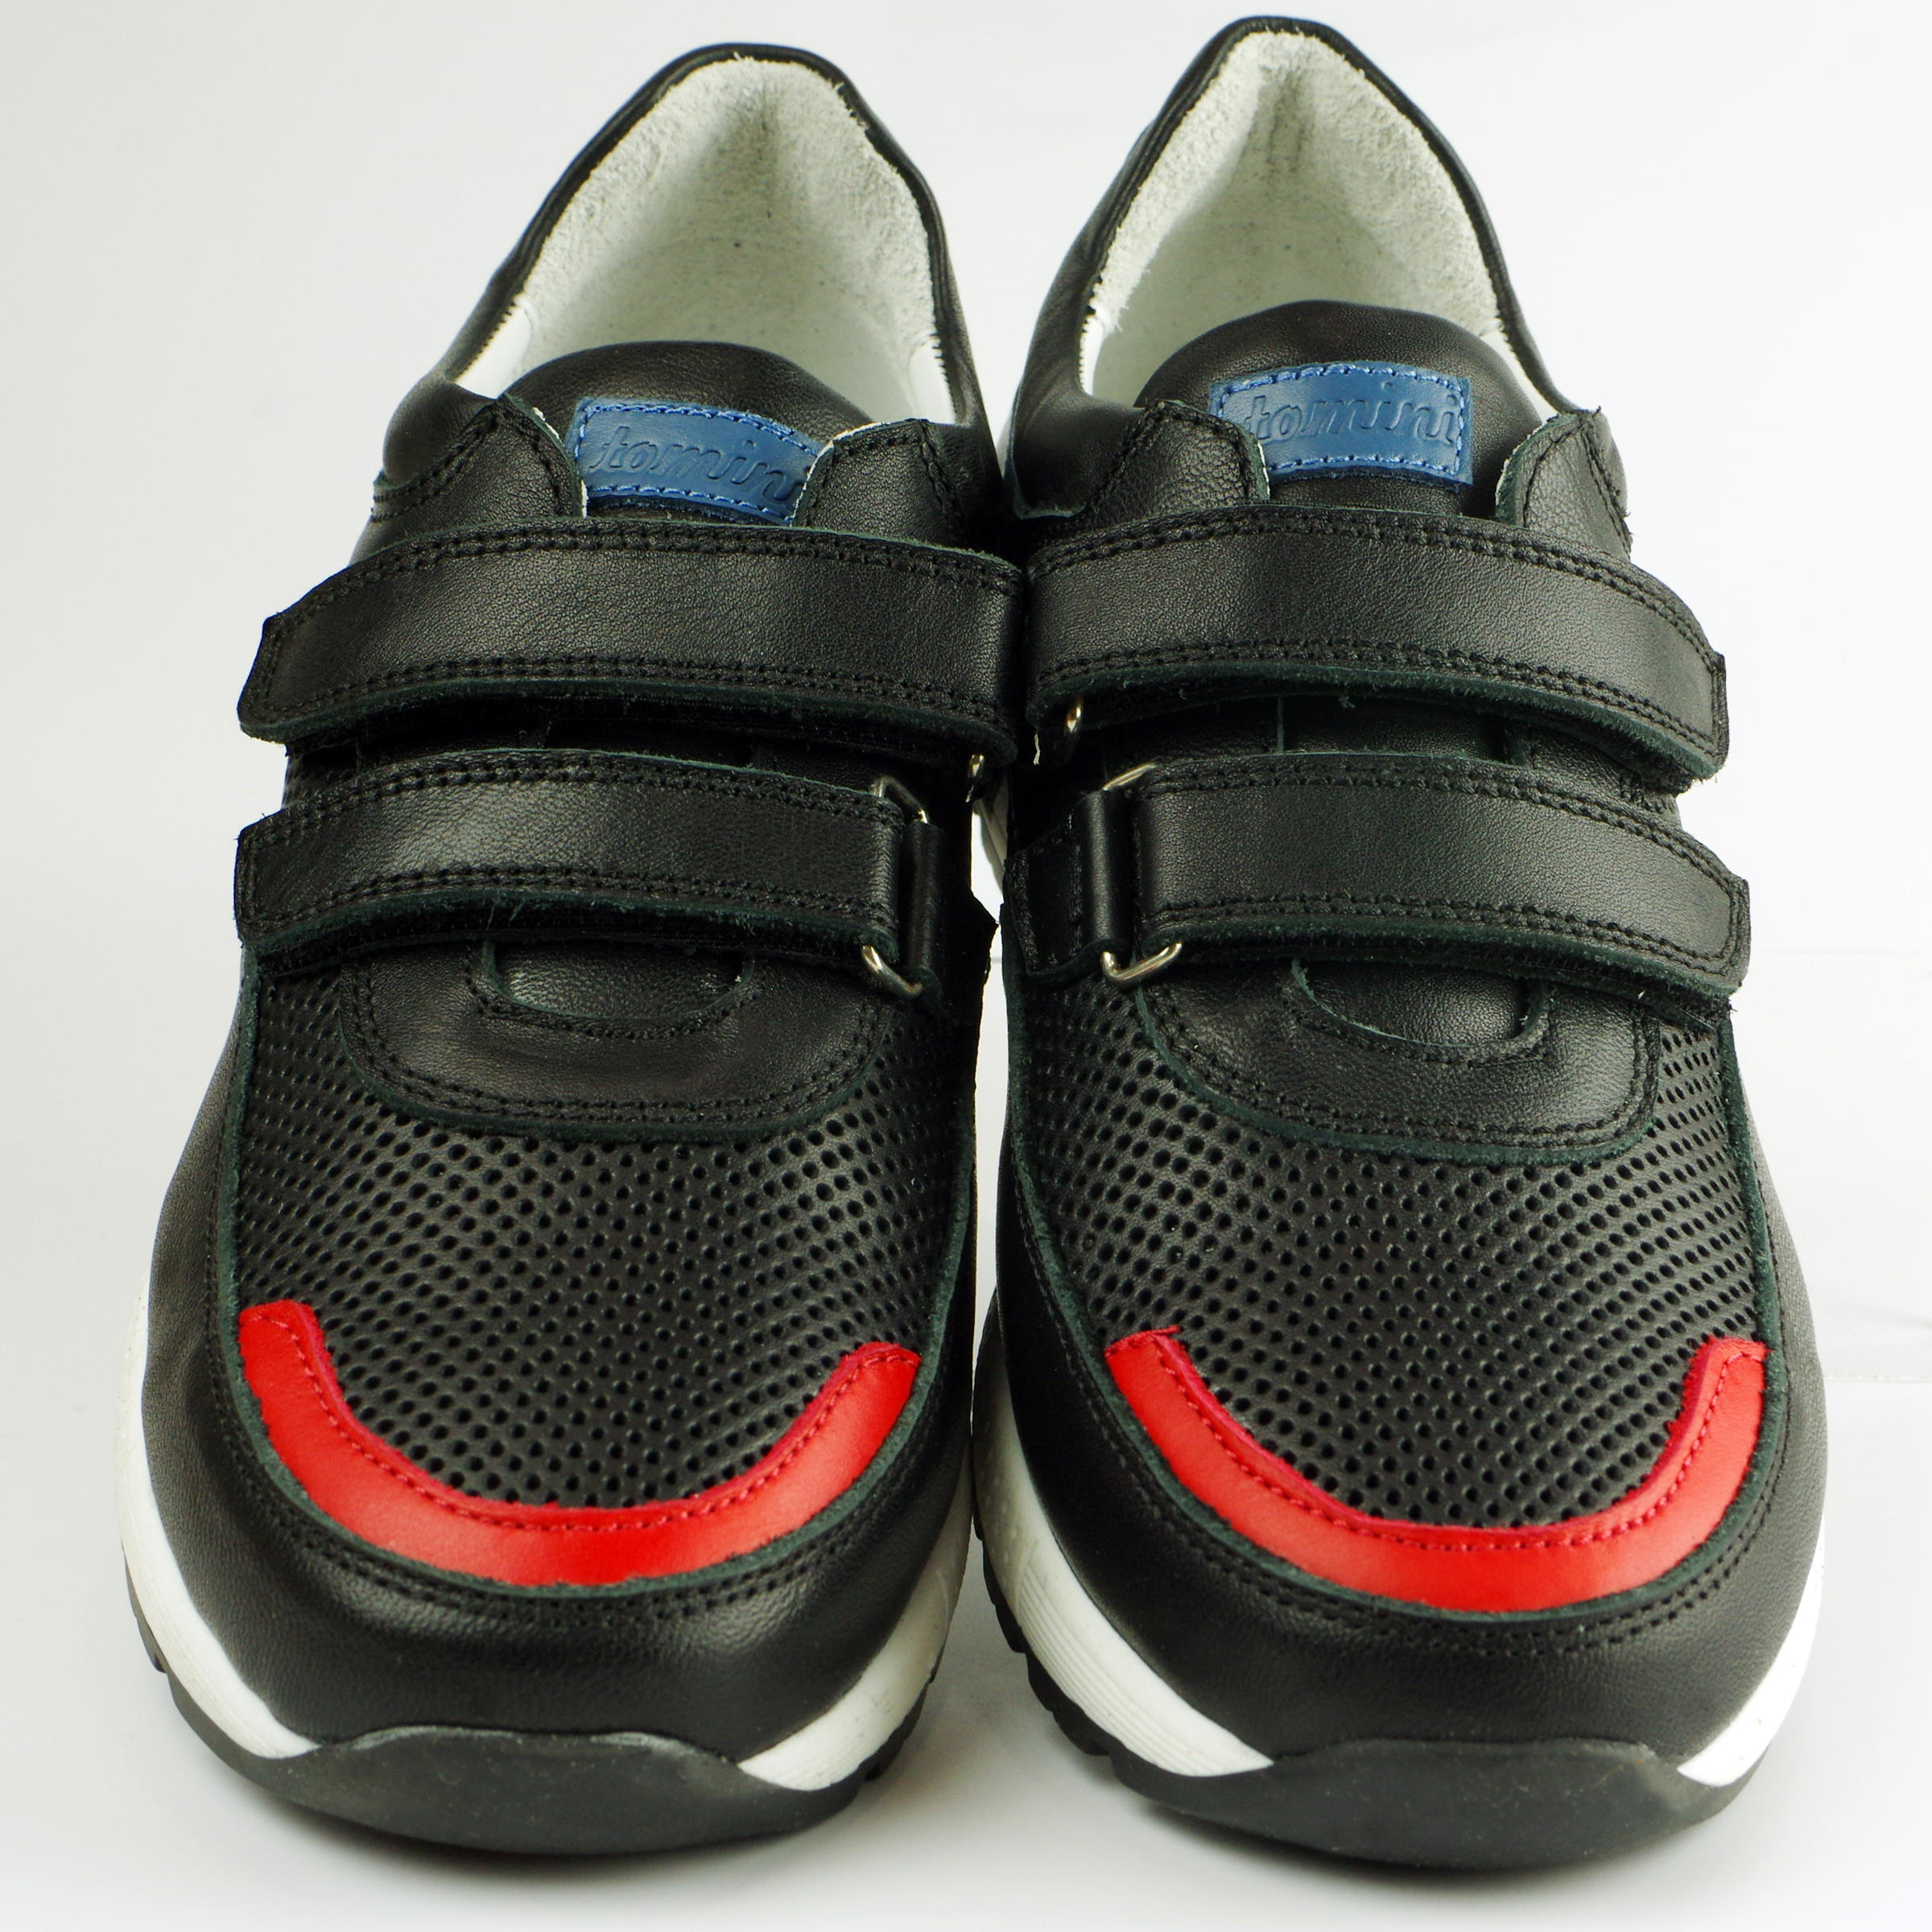 Кросівки підліткові (2112) для хлопчика, матеріал Натуральна шкіра, Чорний колір, 37-40 розміри – Sole Kids. Фото 2